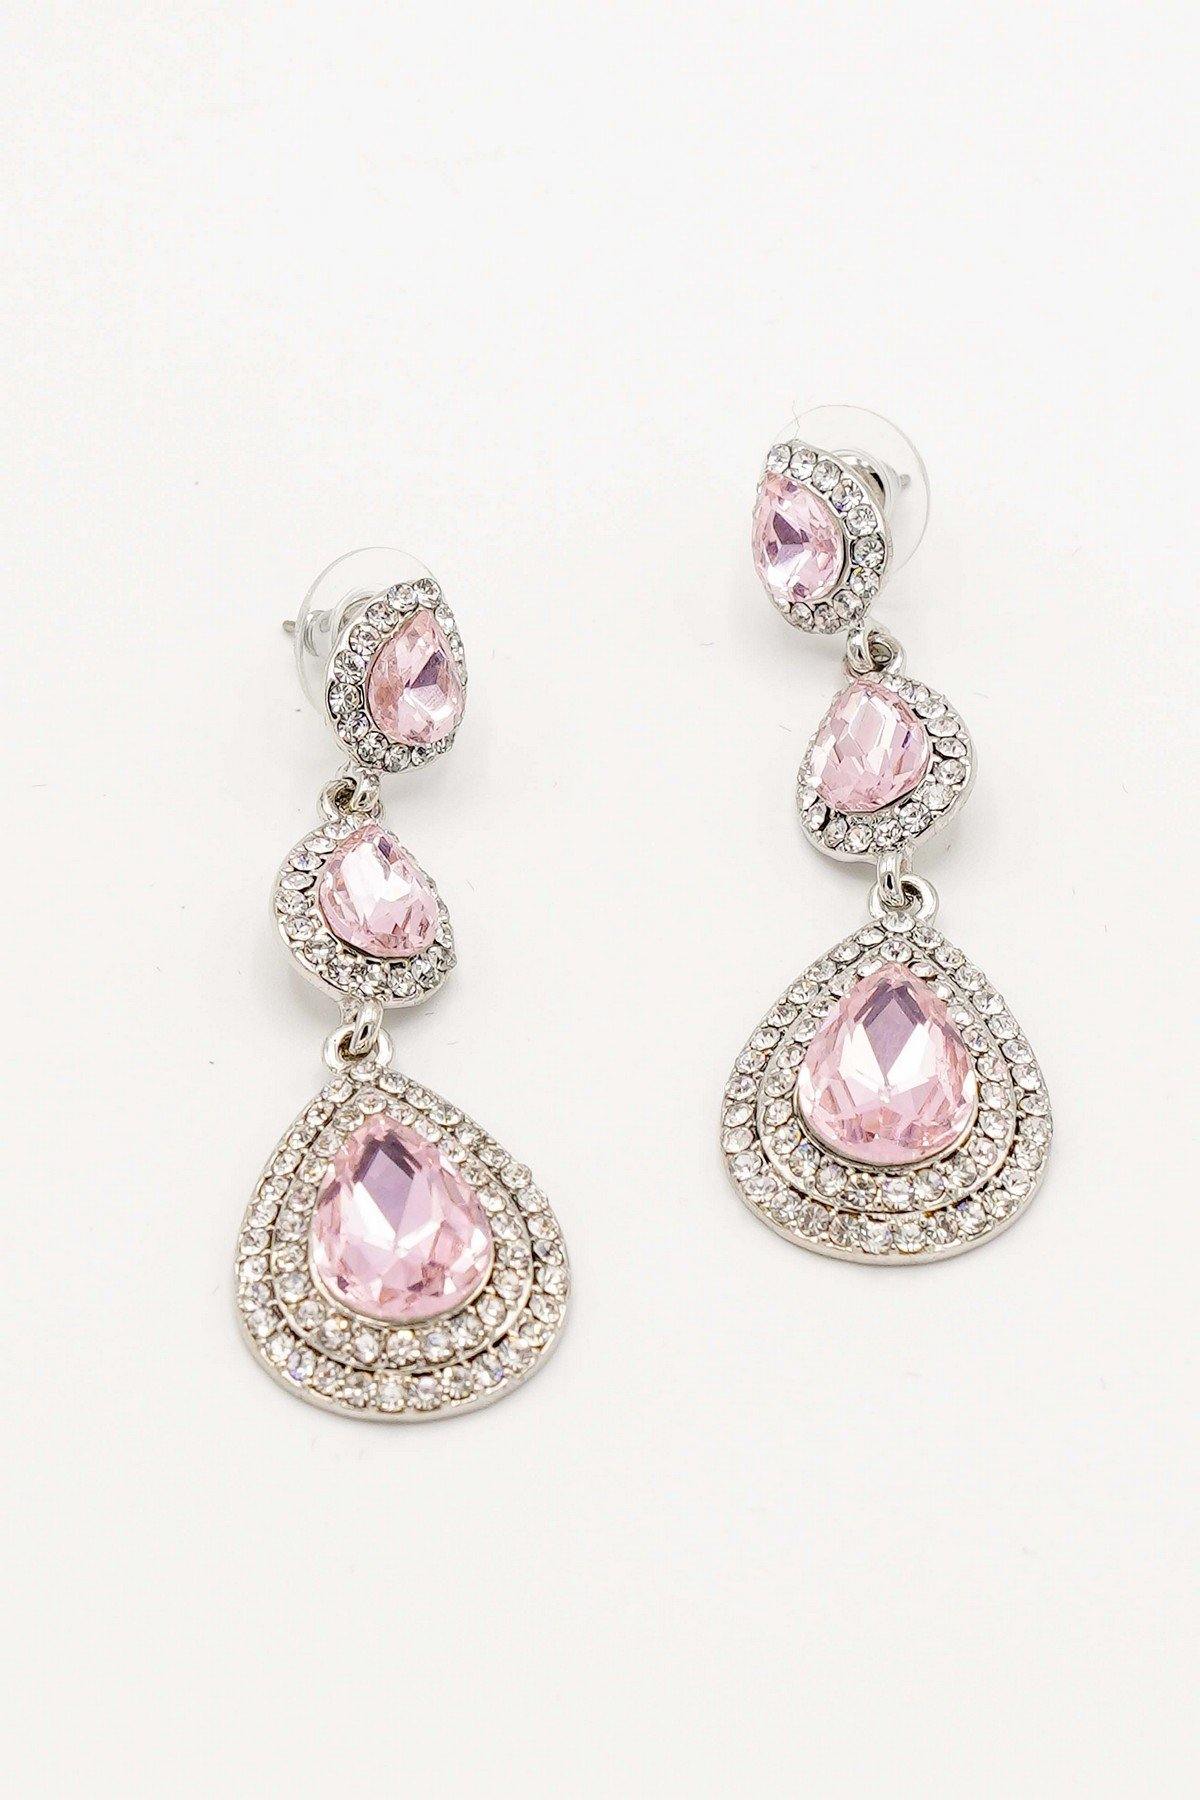 Clear Diamante Teardrop Rhinestone Earrings - The Dress Outlet